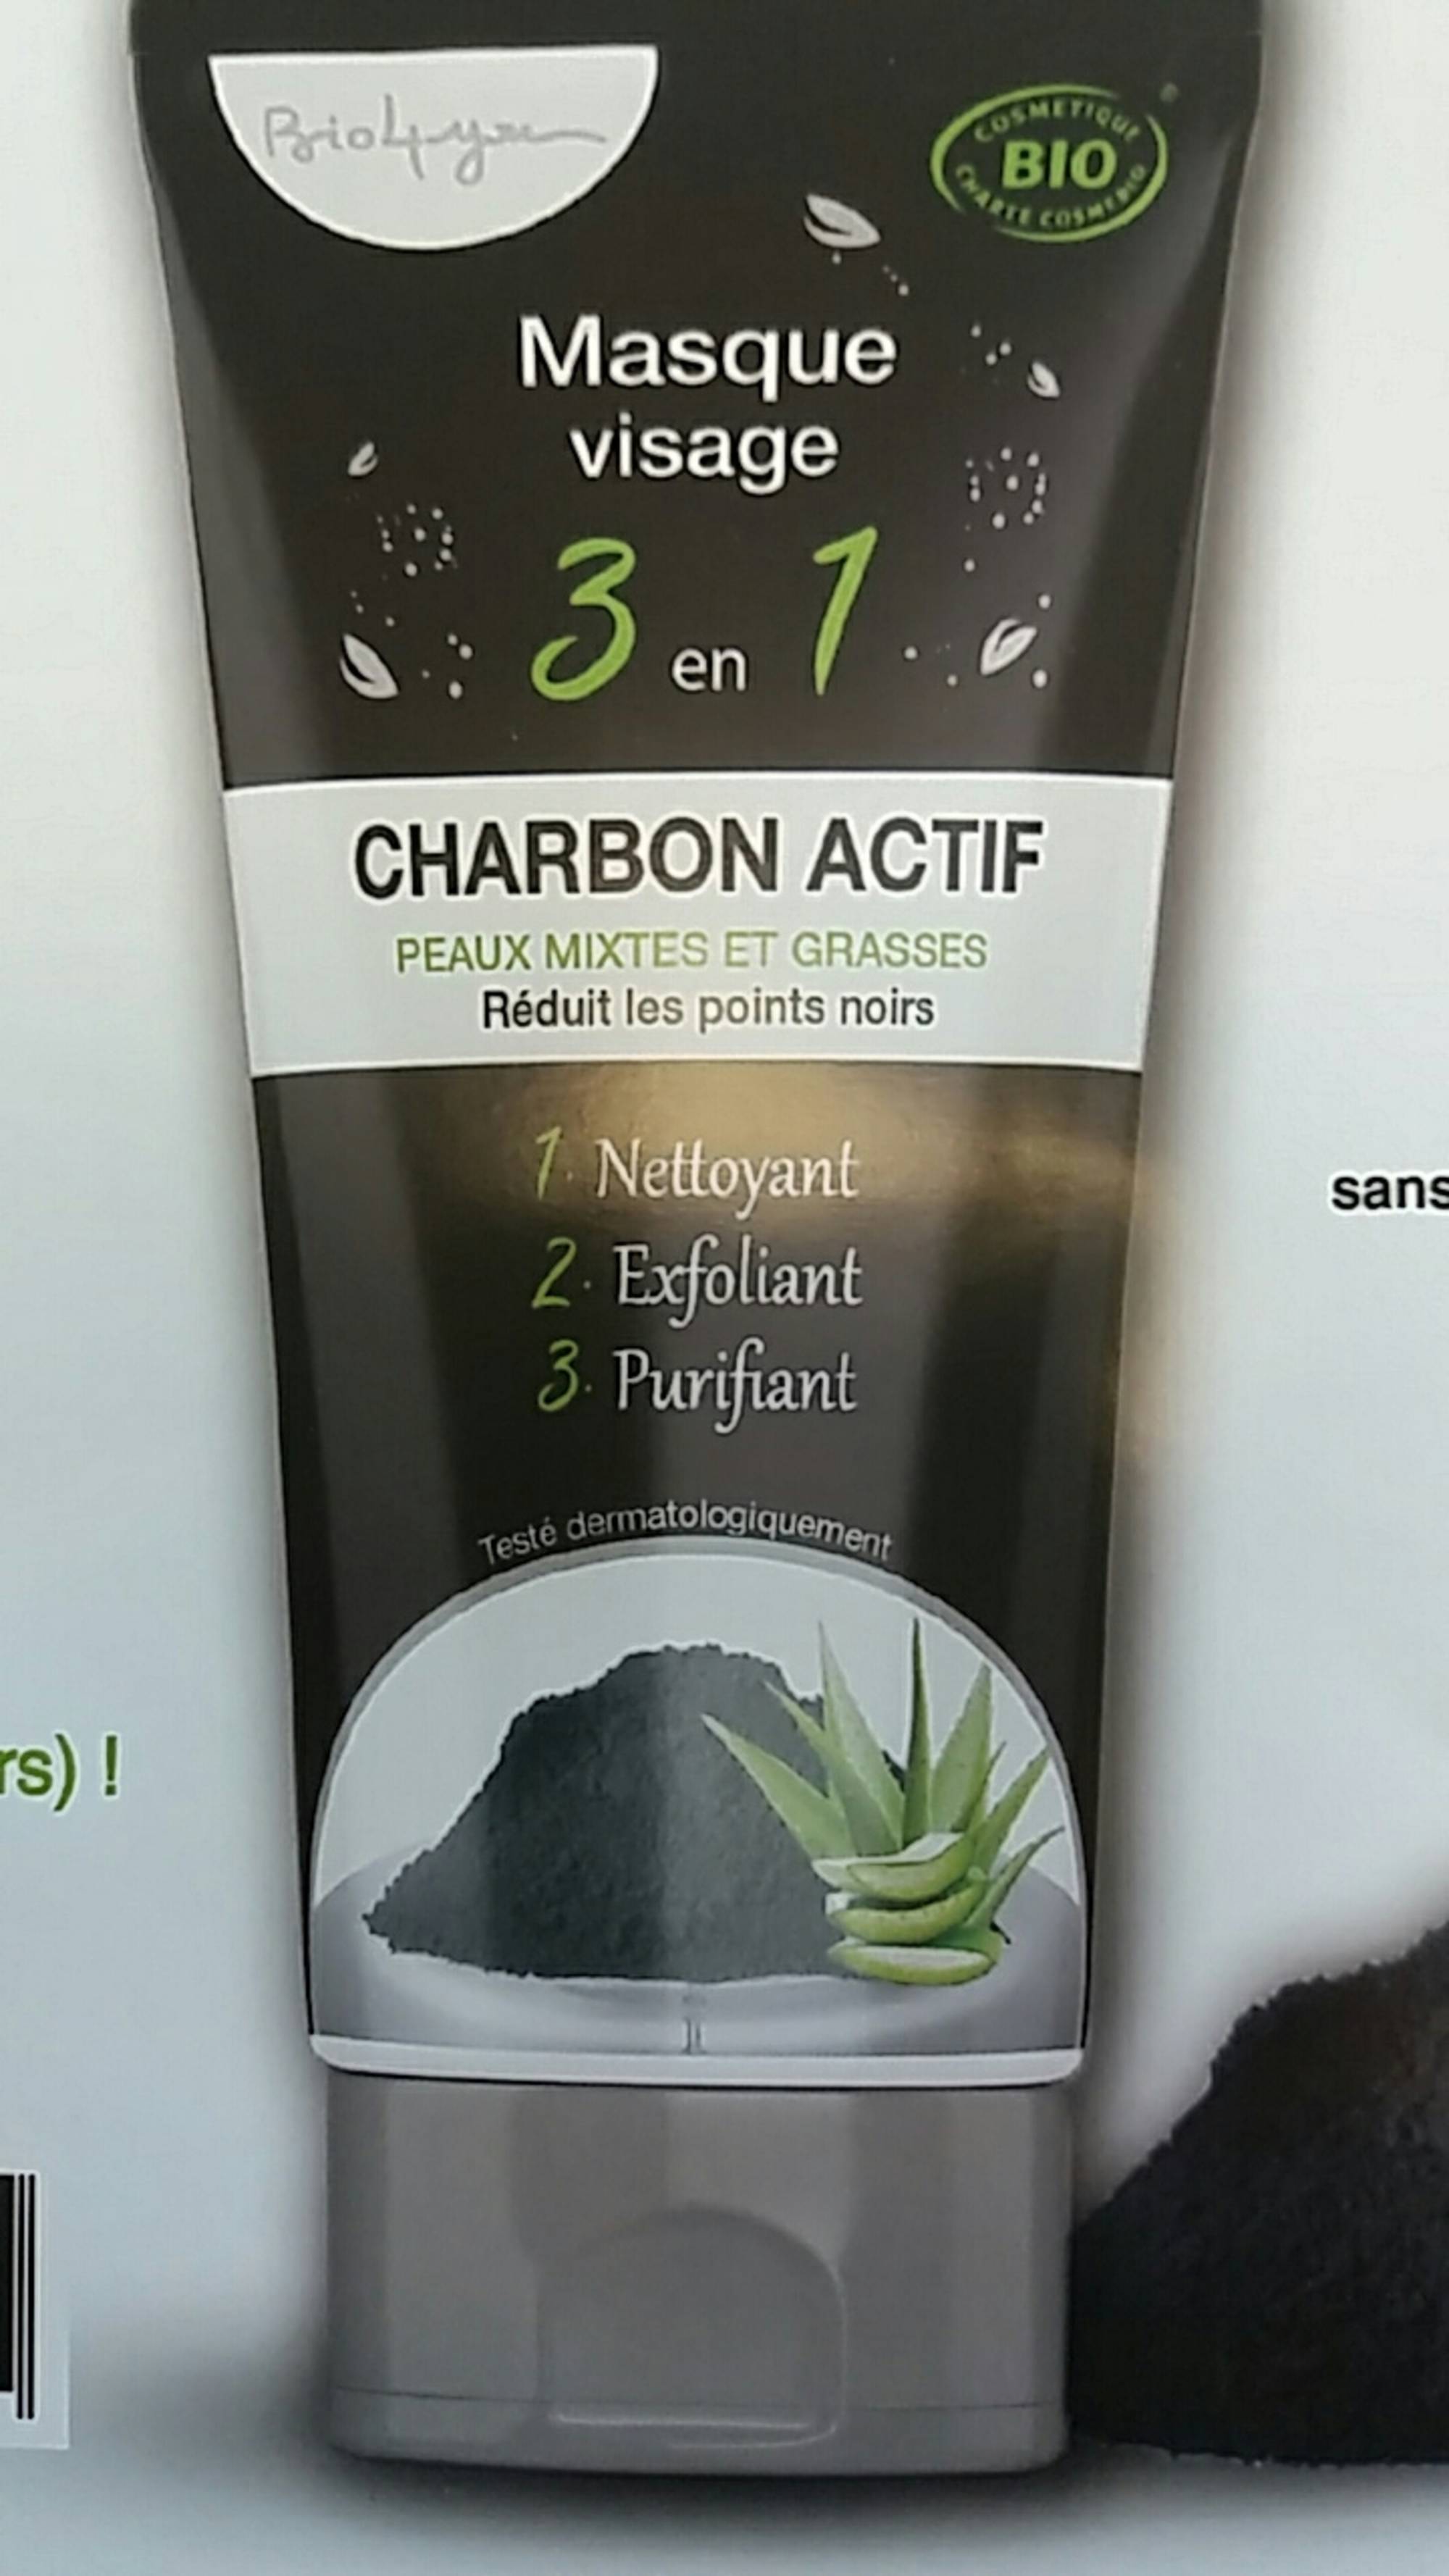 BIO4YOU - Charbon actif - Masque visage 3 en 1